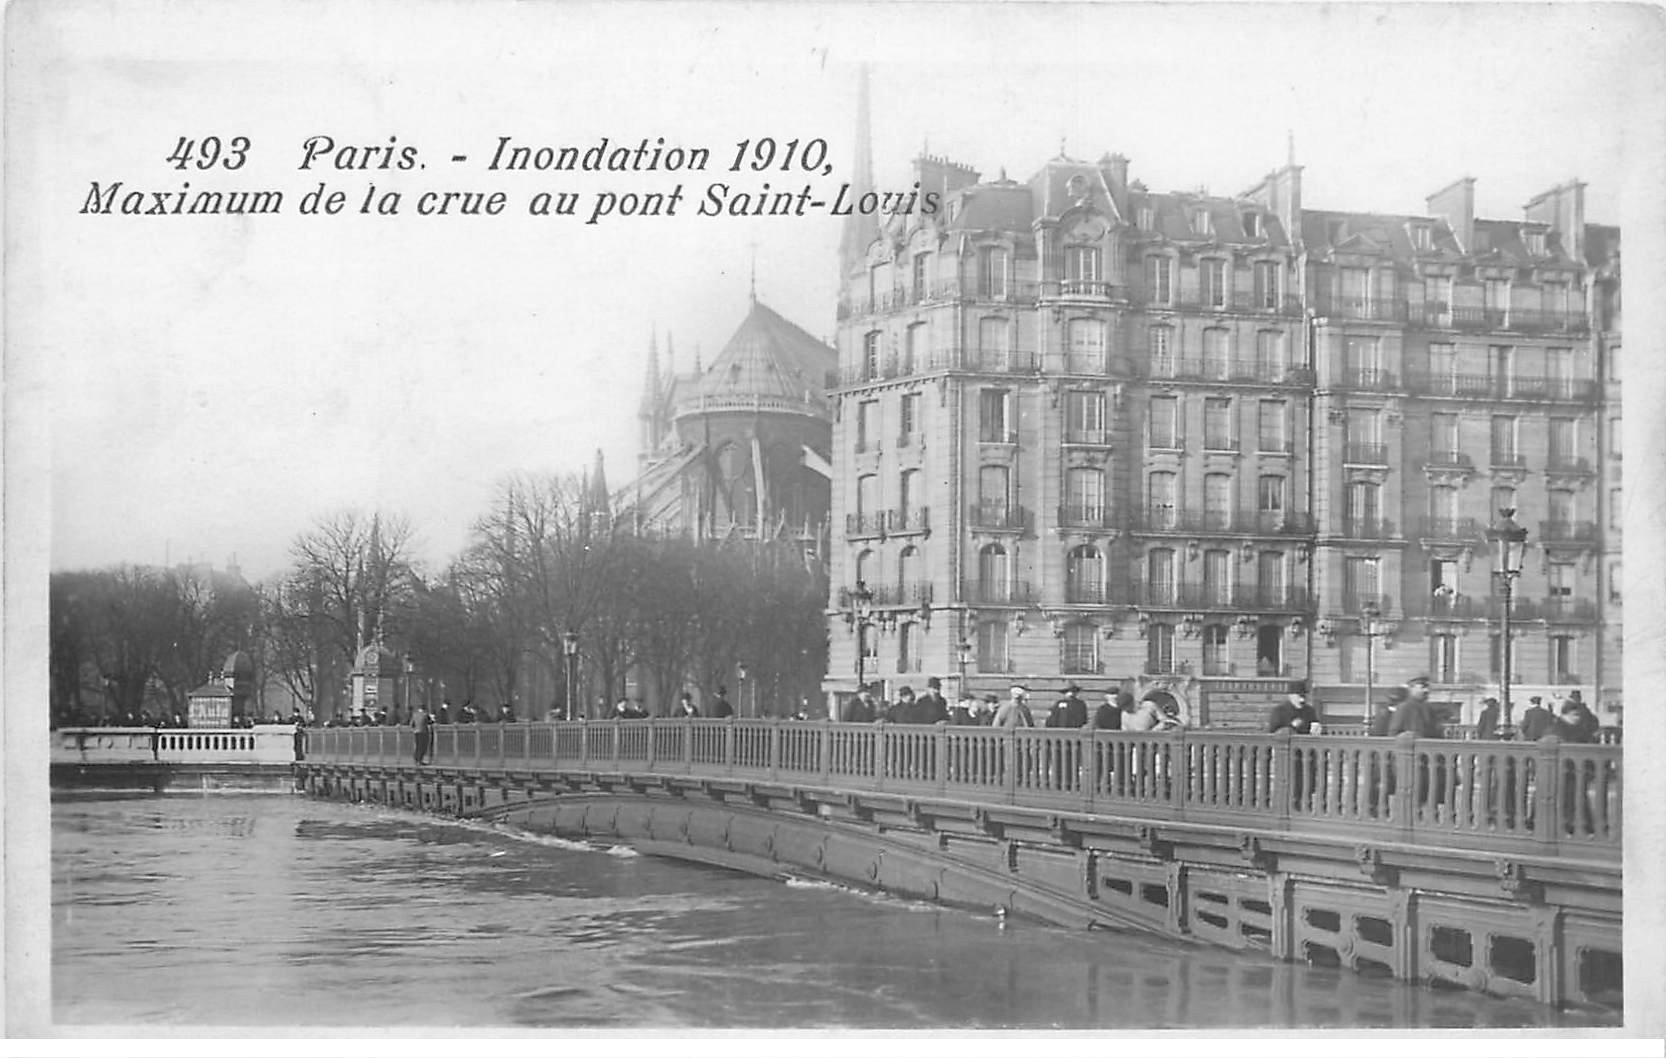 INONDATION ET CRUE PARIS 1910. Pont Saint-Louis